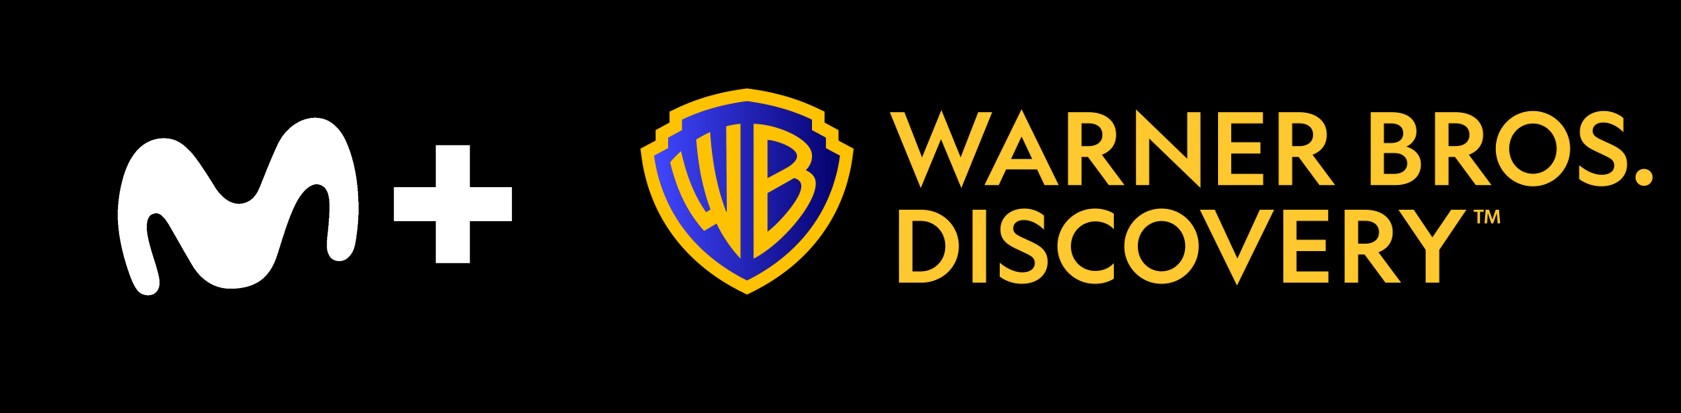 Movistar Plus+ y Warner Bros. Discovery alcanzan un acuerdo estratégico que formulará la oferta de entretenimiento más competitiva de España